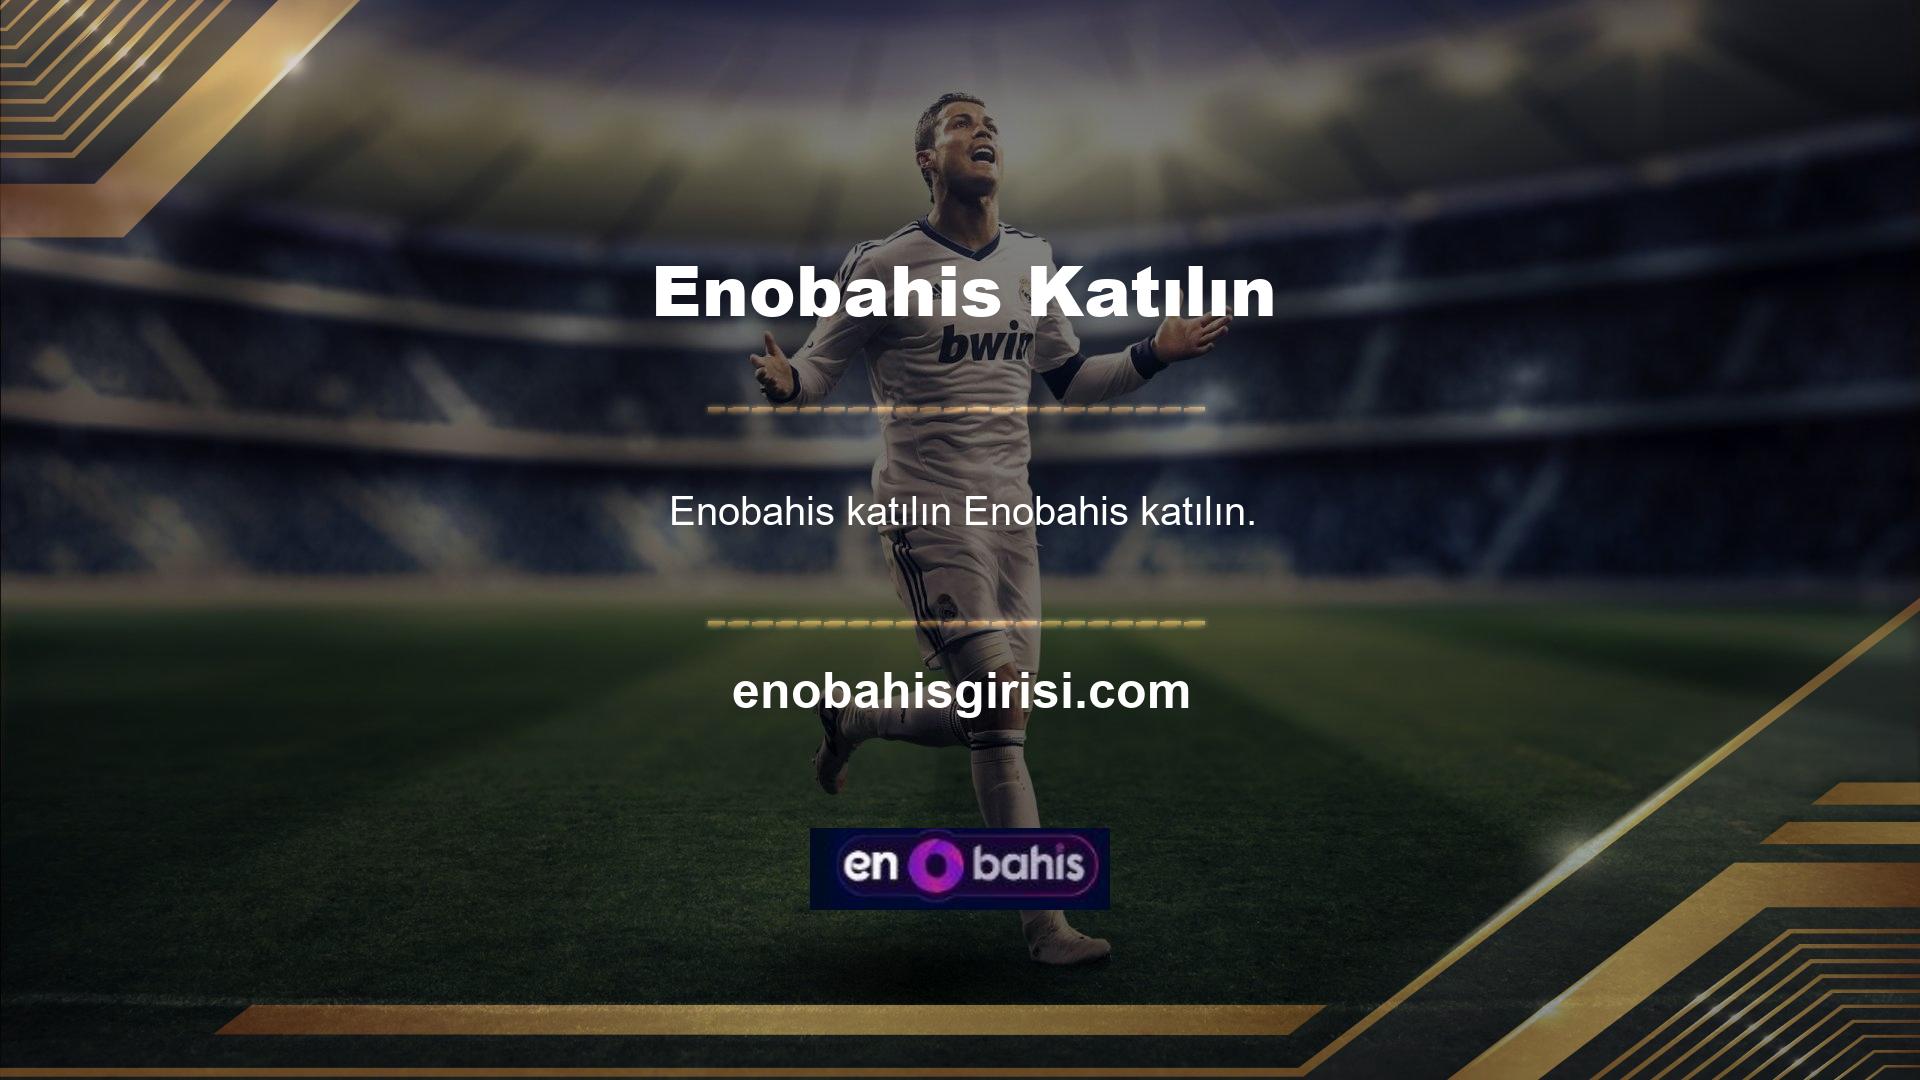 ' Promosyonlar başlatıldı mı? Web sitesi, Enobahis kayıt olup olmadığına bakılmaksızın reklam desteği sağlayacaktır